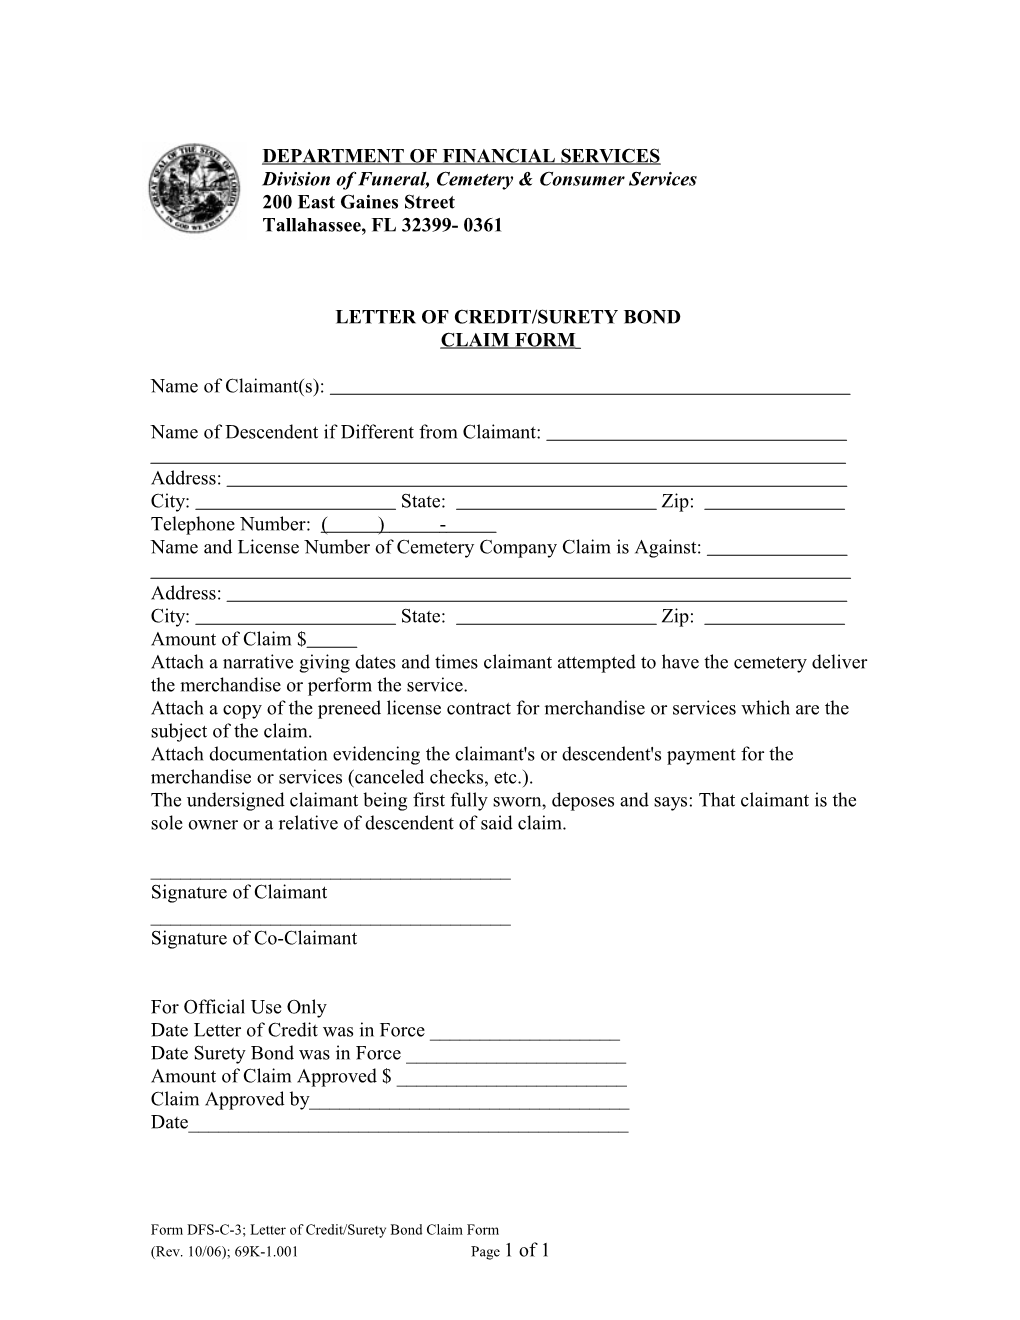 Letter Of Credit/Surety Bond Claim Form